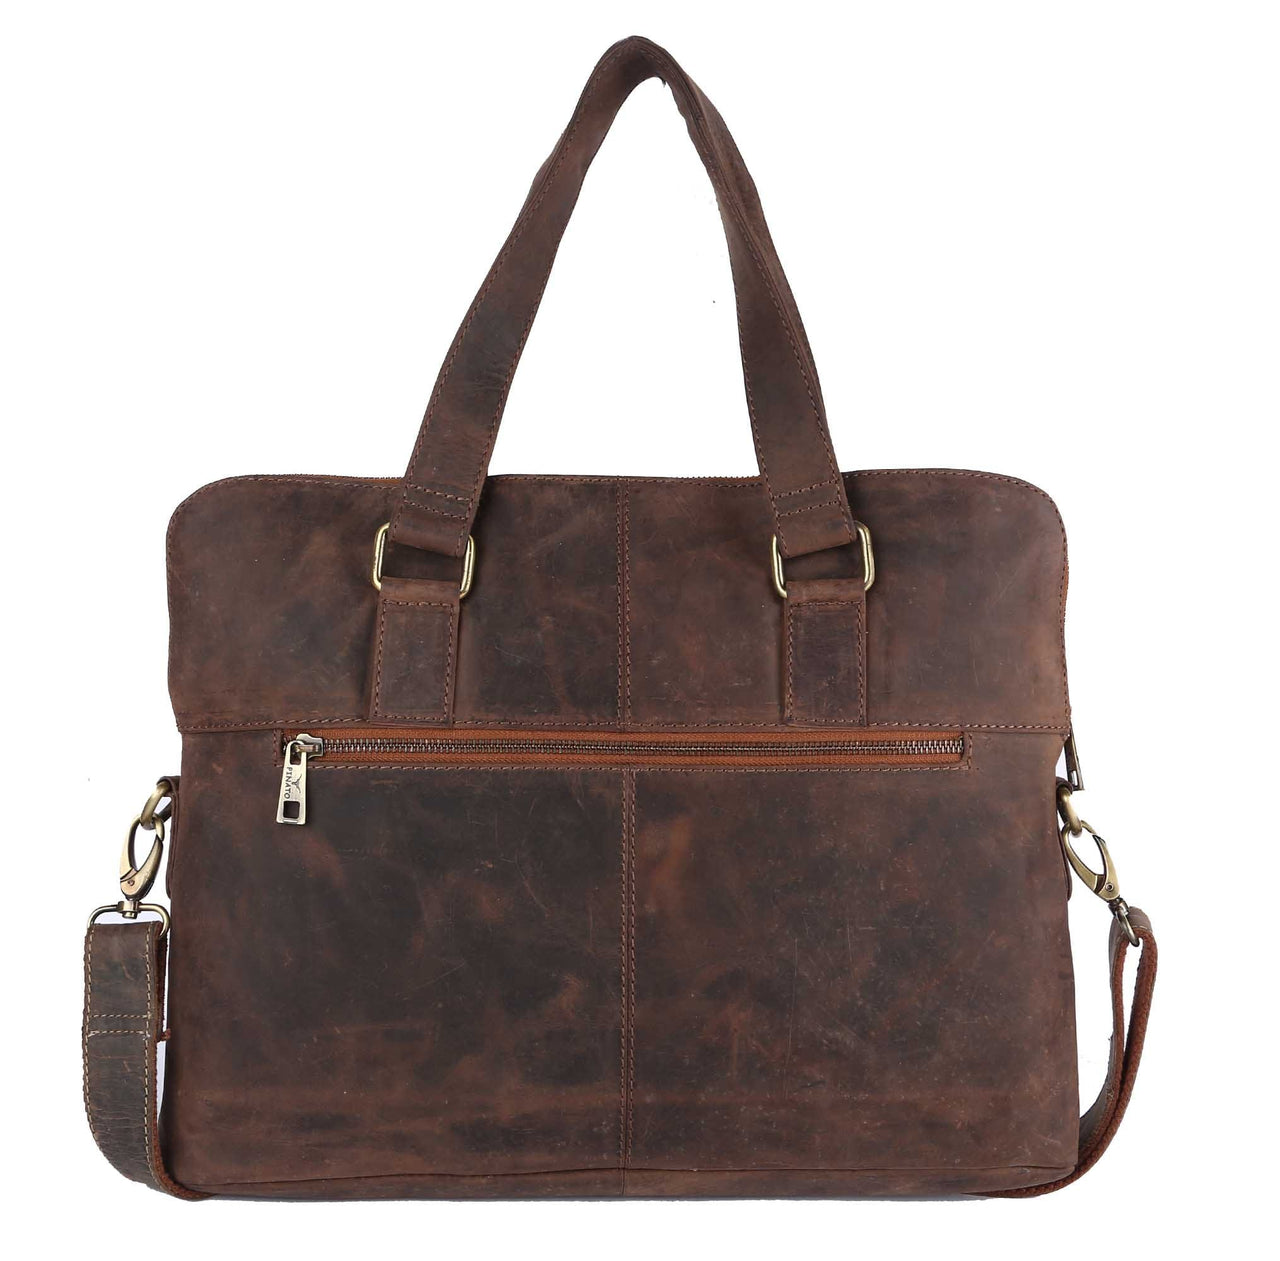 Pinato Genuine Leather Cognac Messenger Laptop Bag for Men & Women (PL-3918)